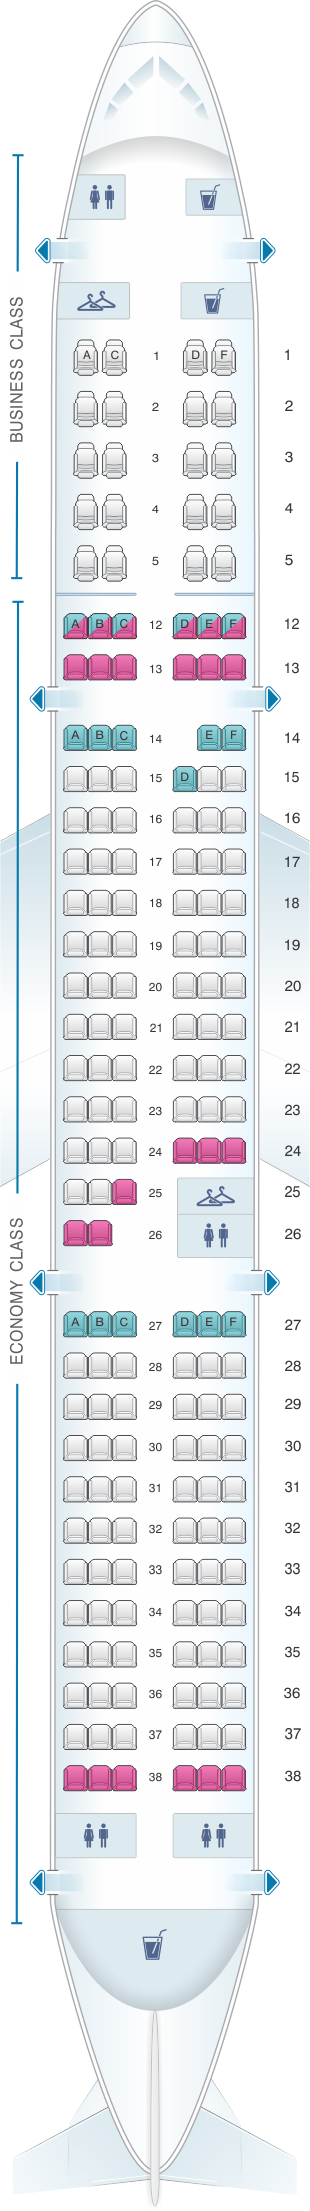 Seat Map Air Canada Airbus A321 | SeatMaestro.com